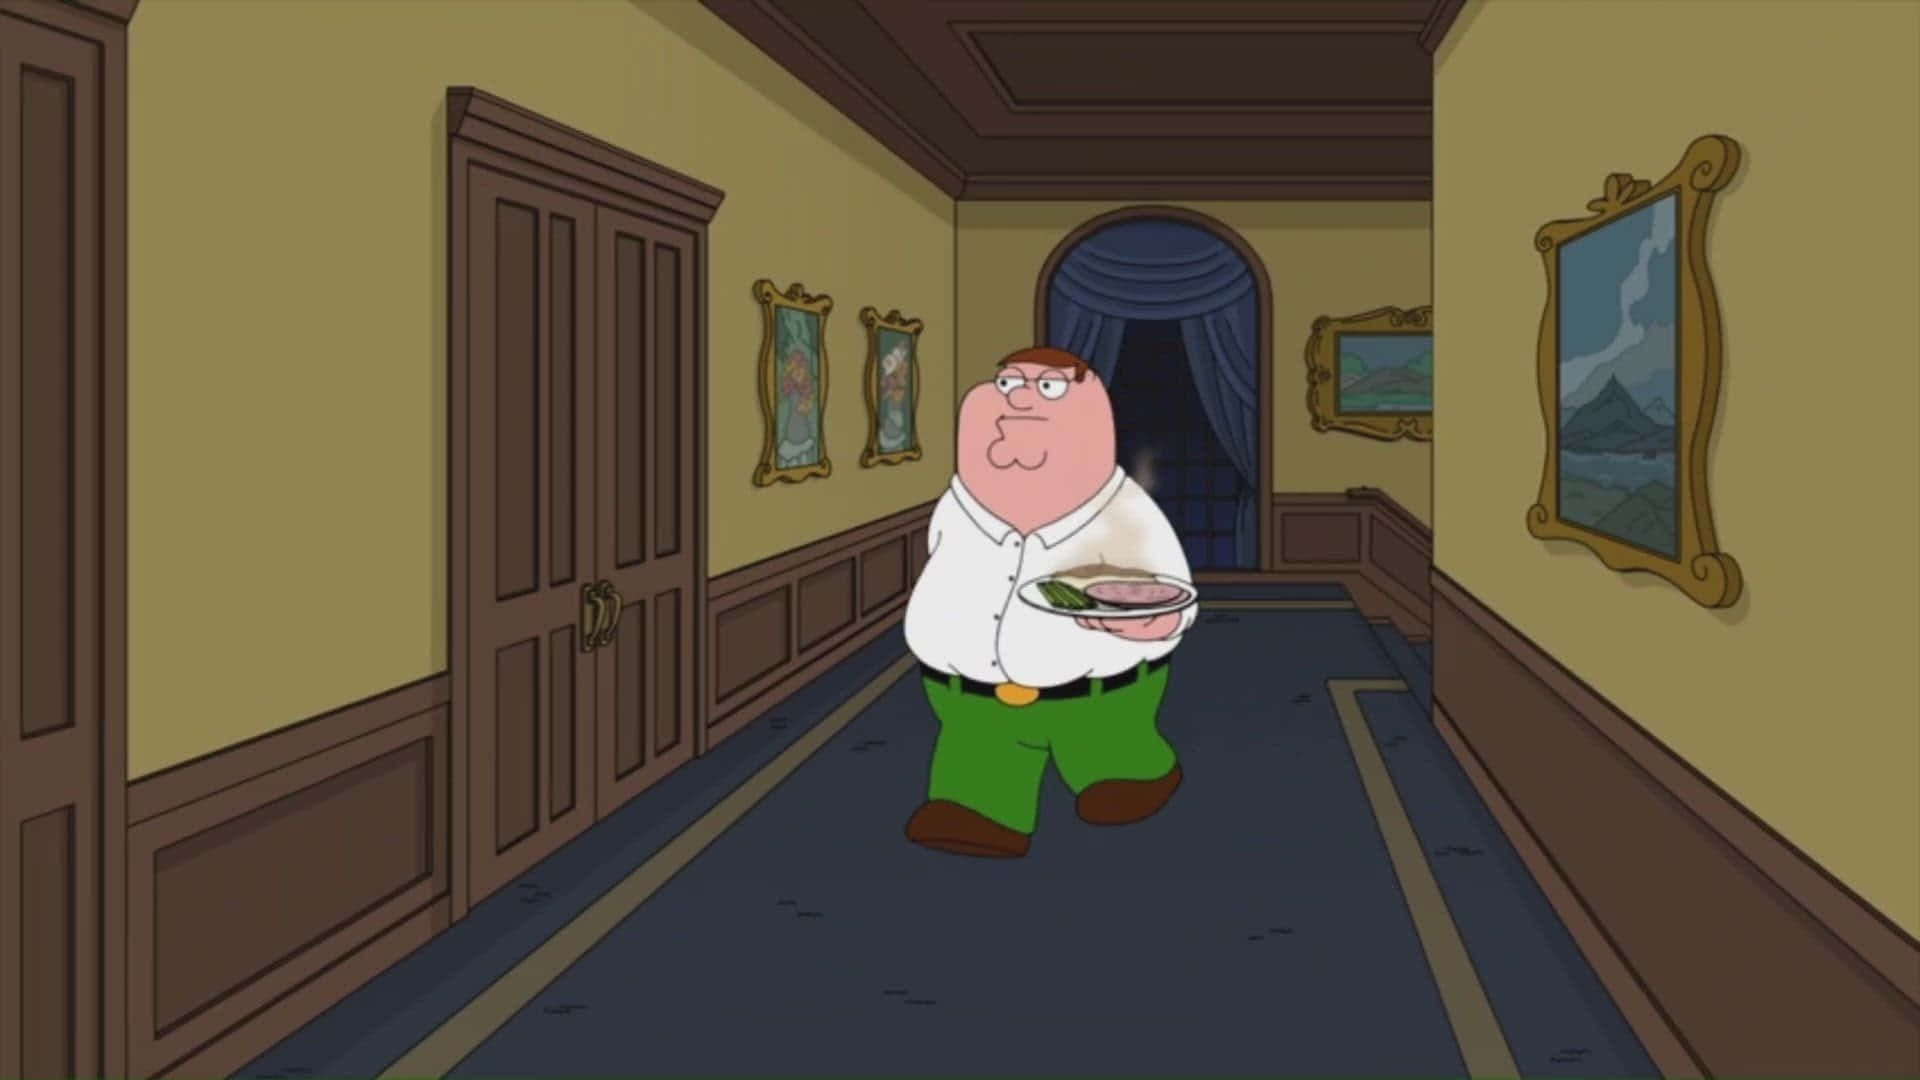 Petergriffin Lacht Sich In Der Trickserie Family Guy Aus Allen Schwierigkeiten Heraus.